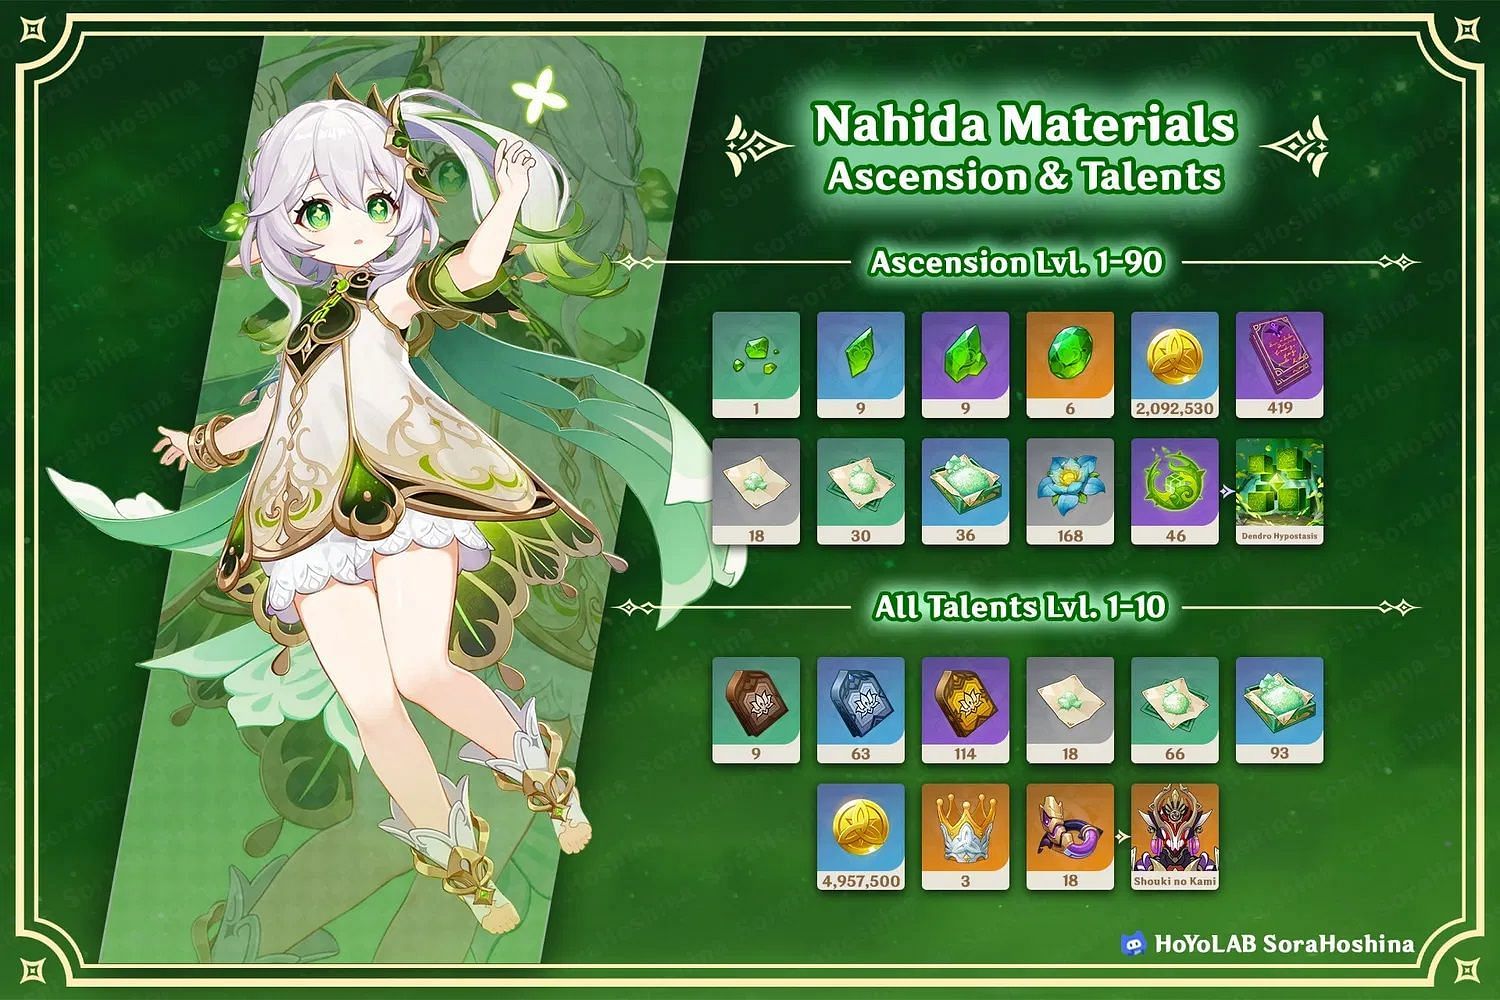 All Nahida materials (Image via HoYoLAB/SoraHoshina)